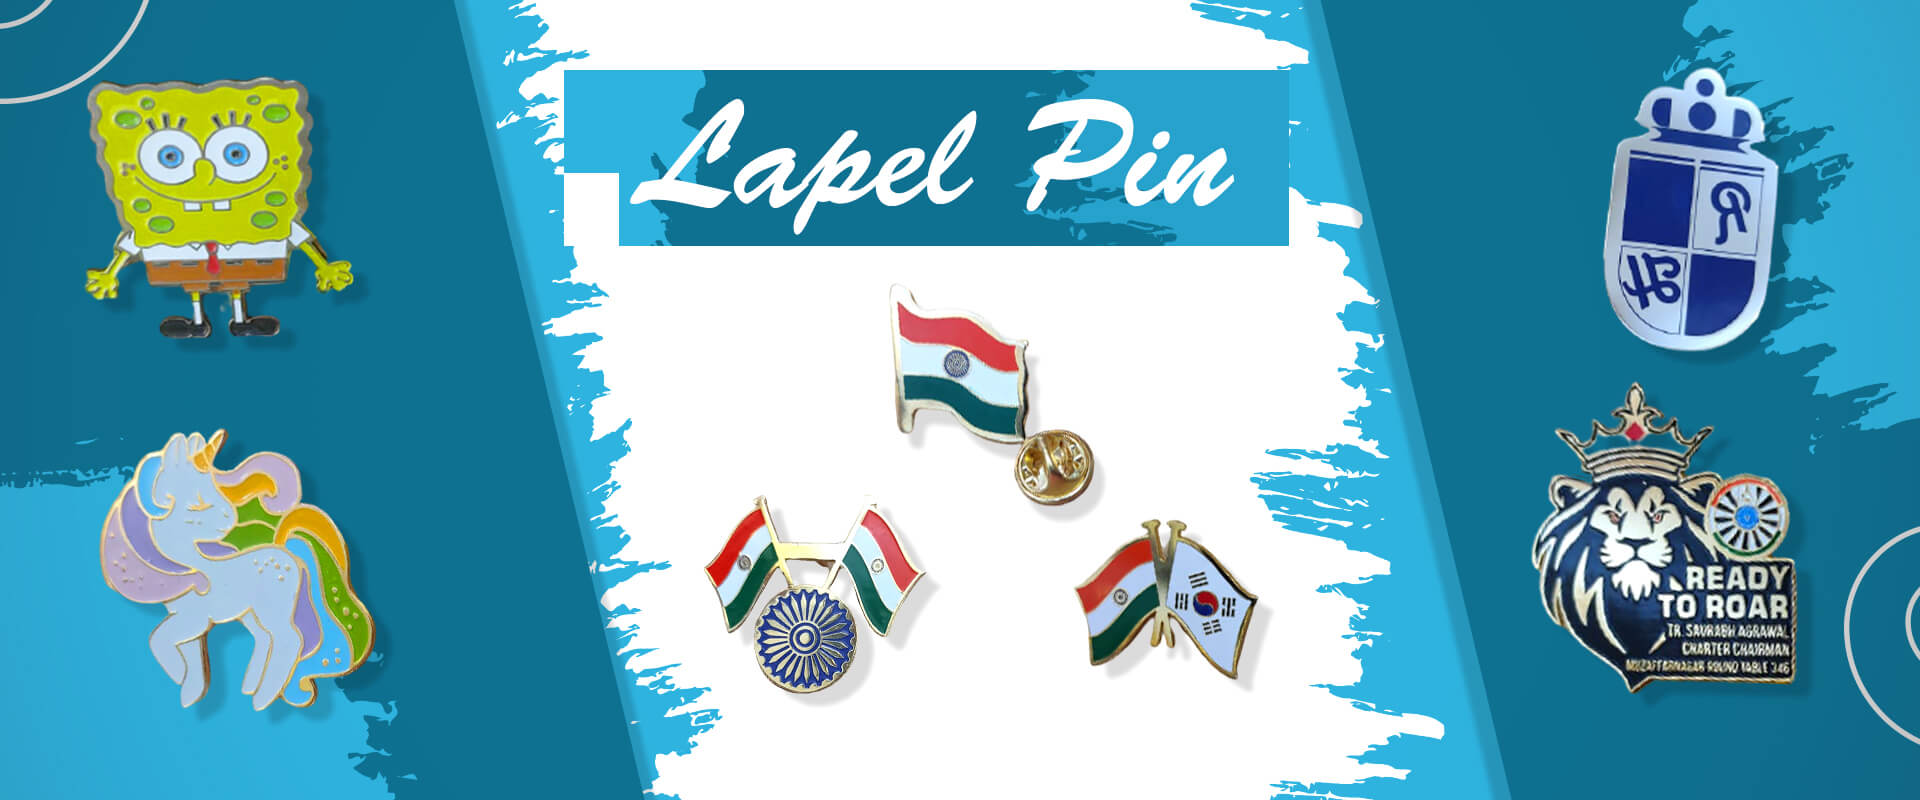 Lapel Pin Manufacturers